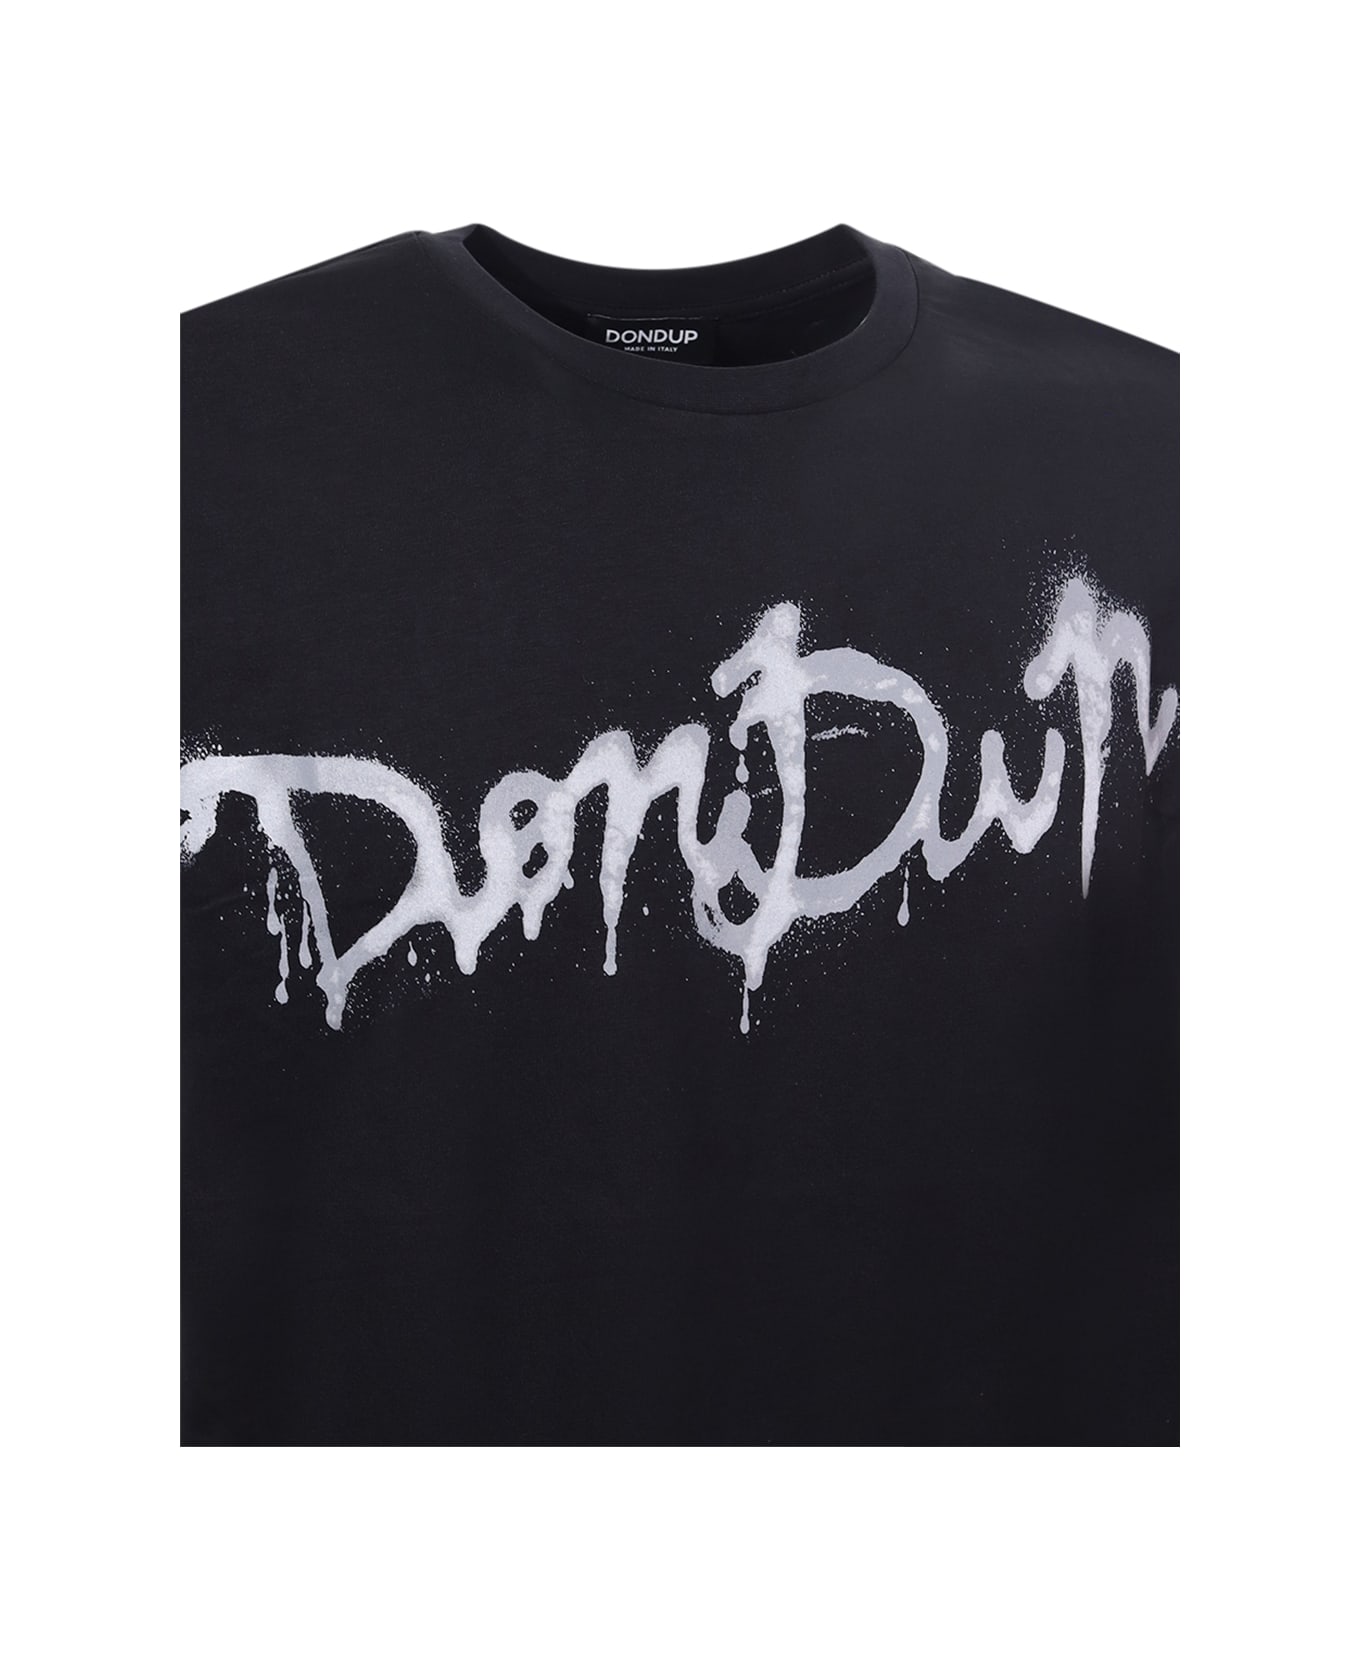 Dondup T-shirt Dondup - nero シャツ